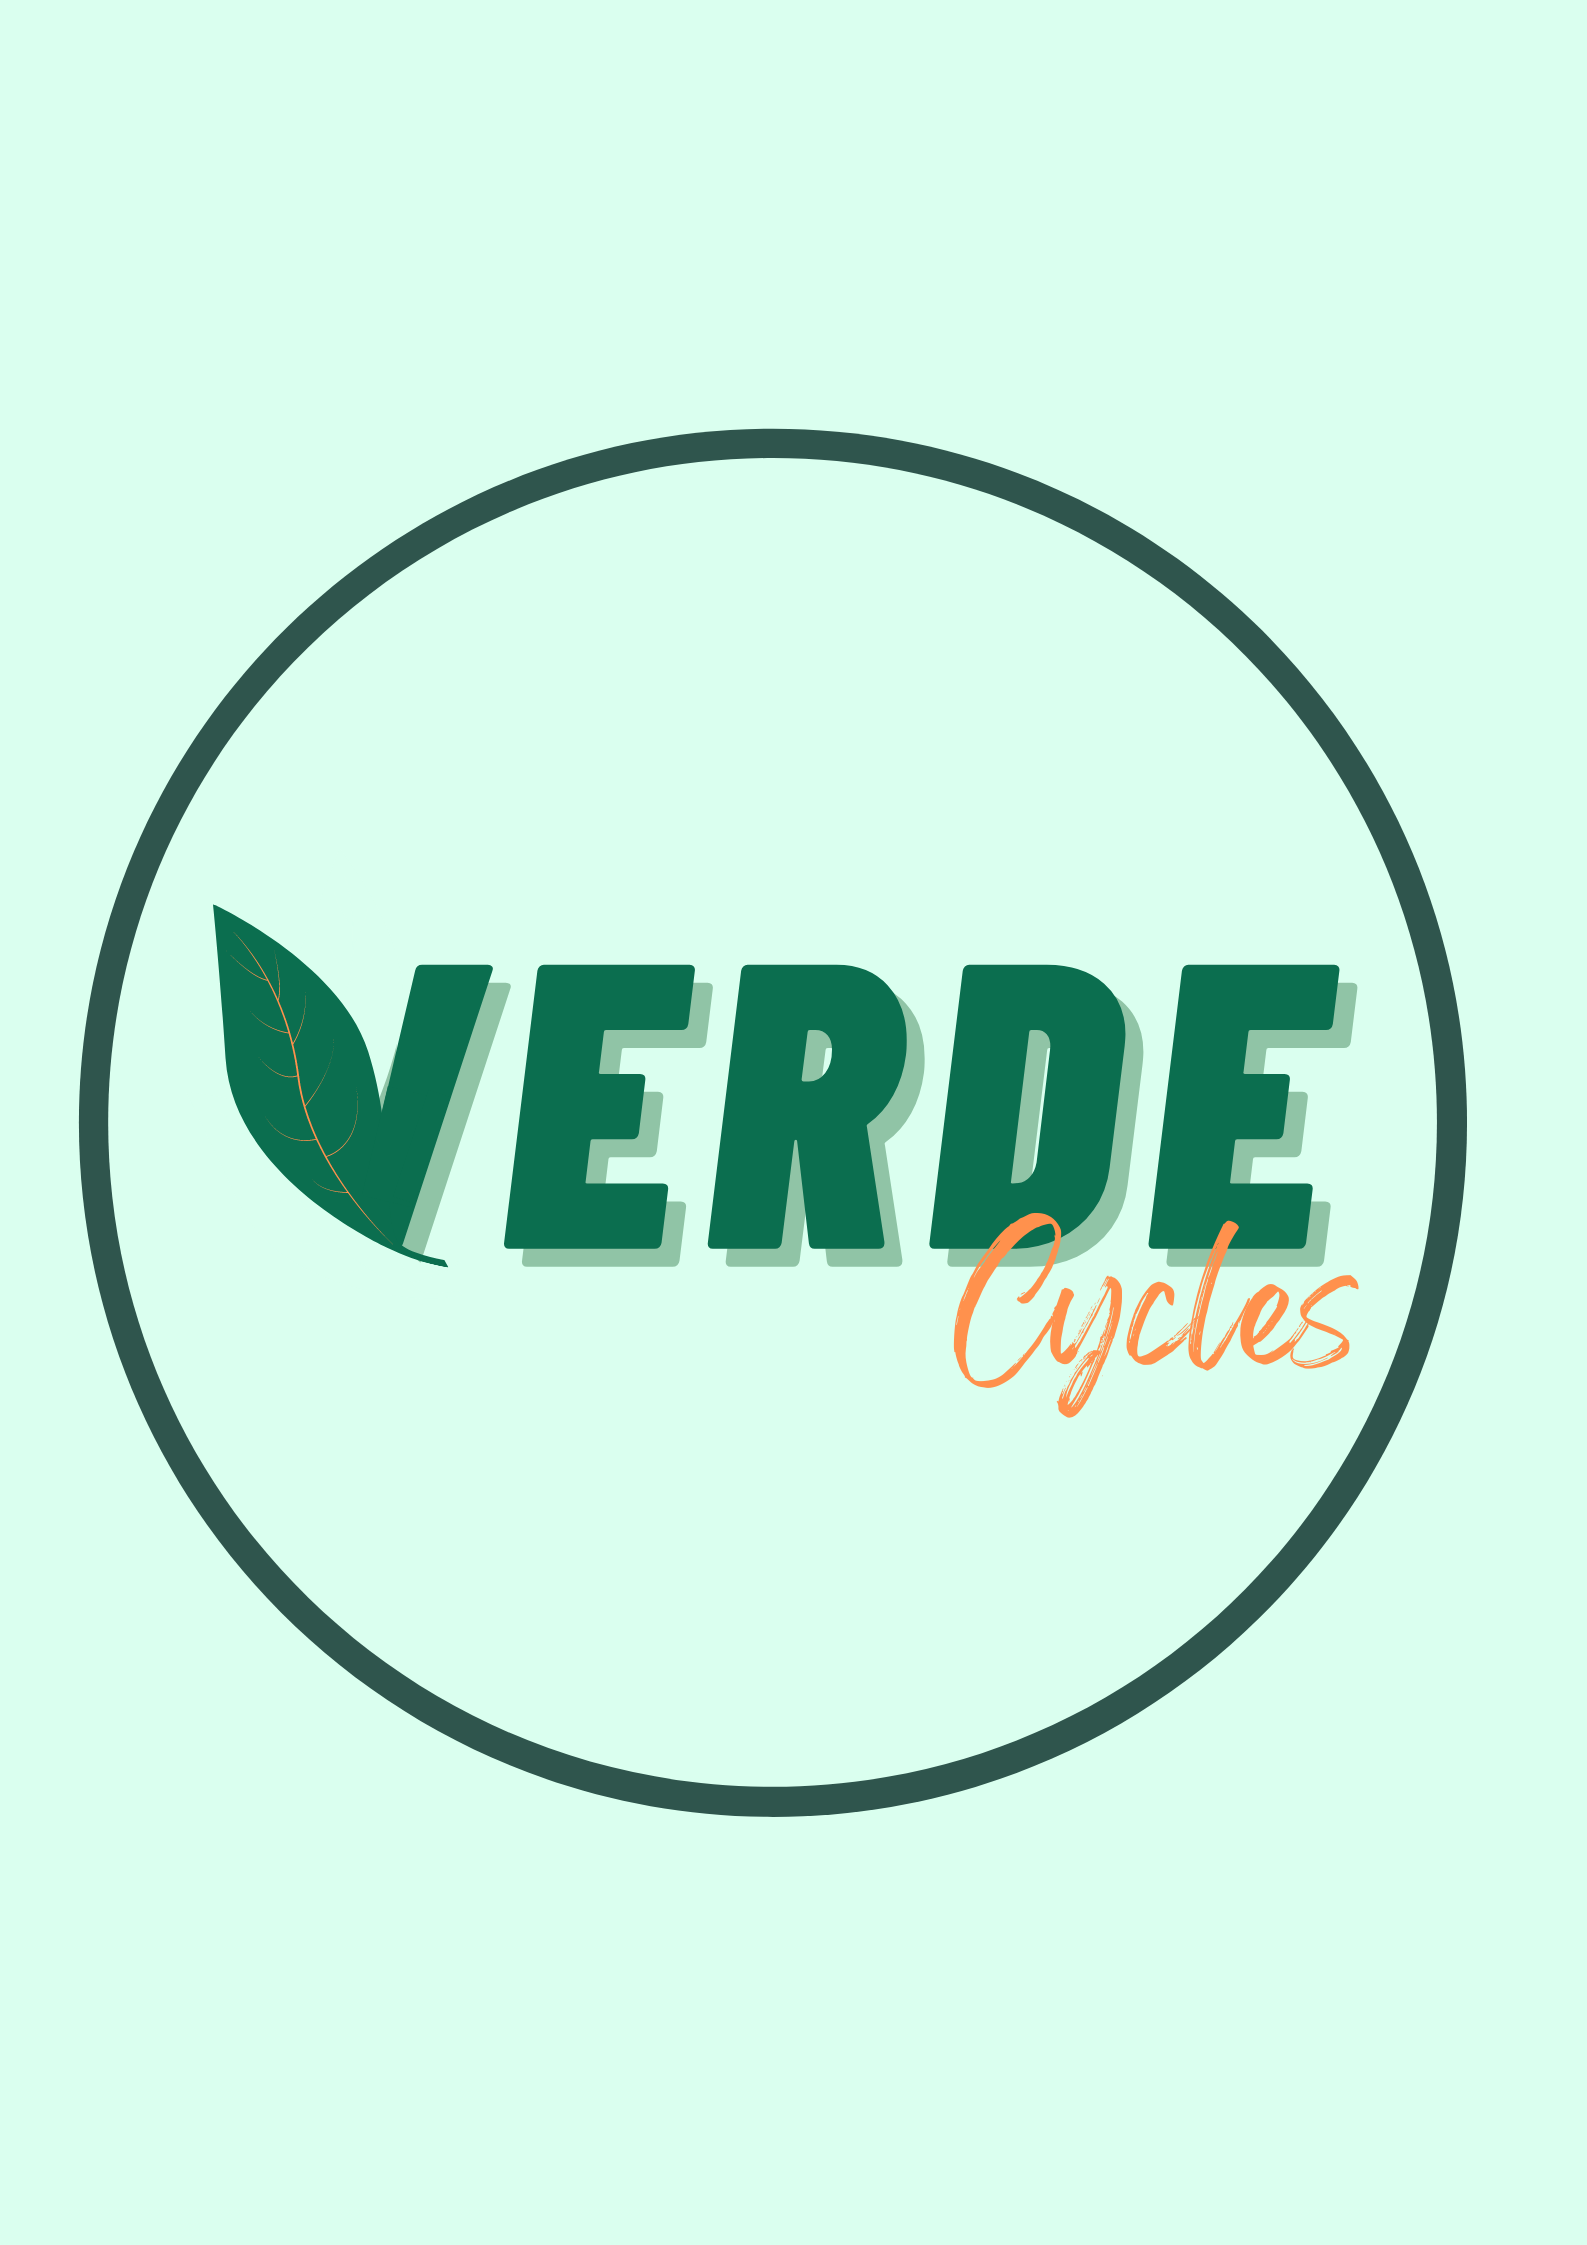 VERDE CYCLES